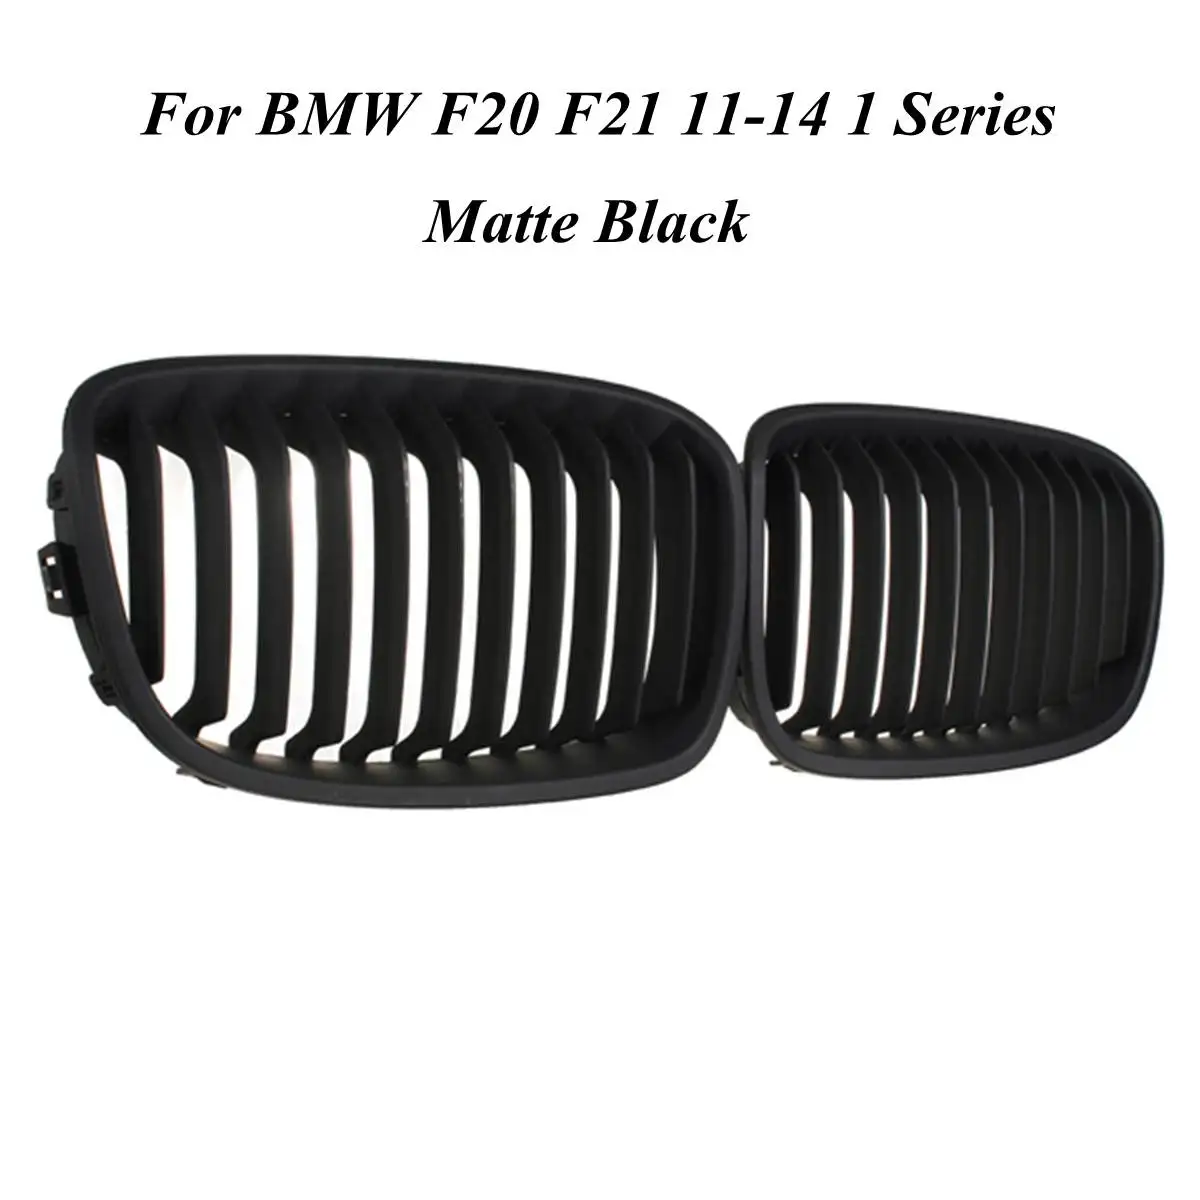 Для BMW F20 F21 2011 2013 1 серия, глянцевая матовая Черная Широкая Передняя решетка для почек, автостайлинг, гоночные решетки - Цвет: Matte Black